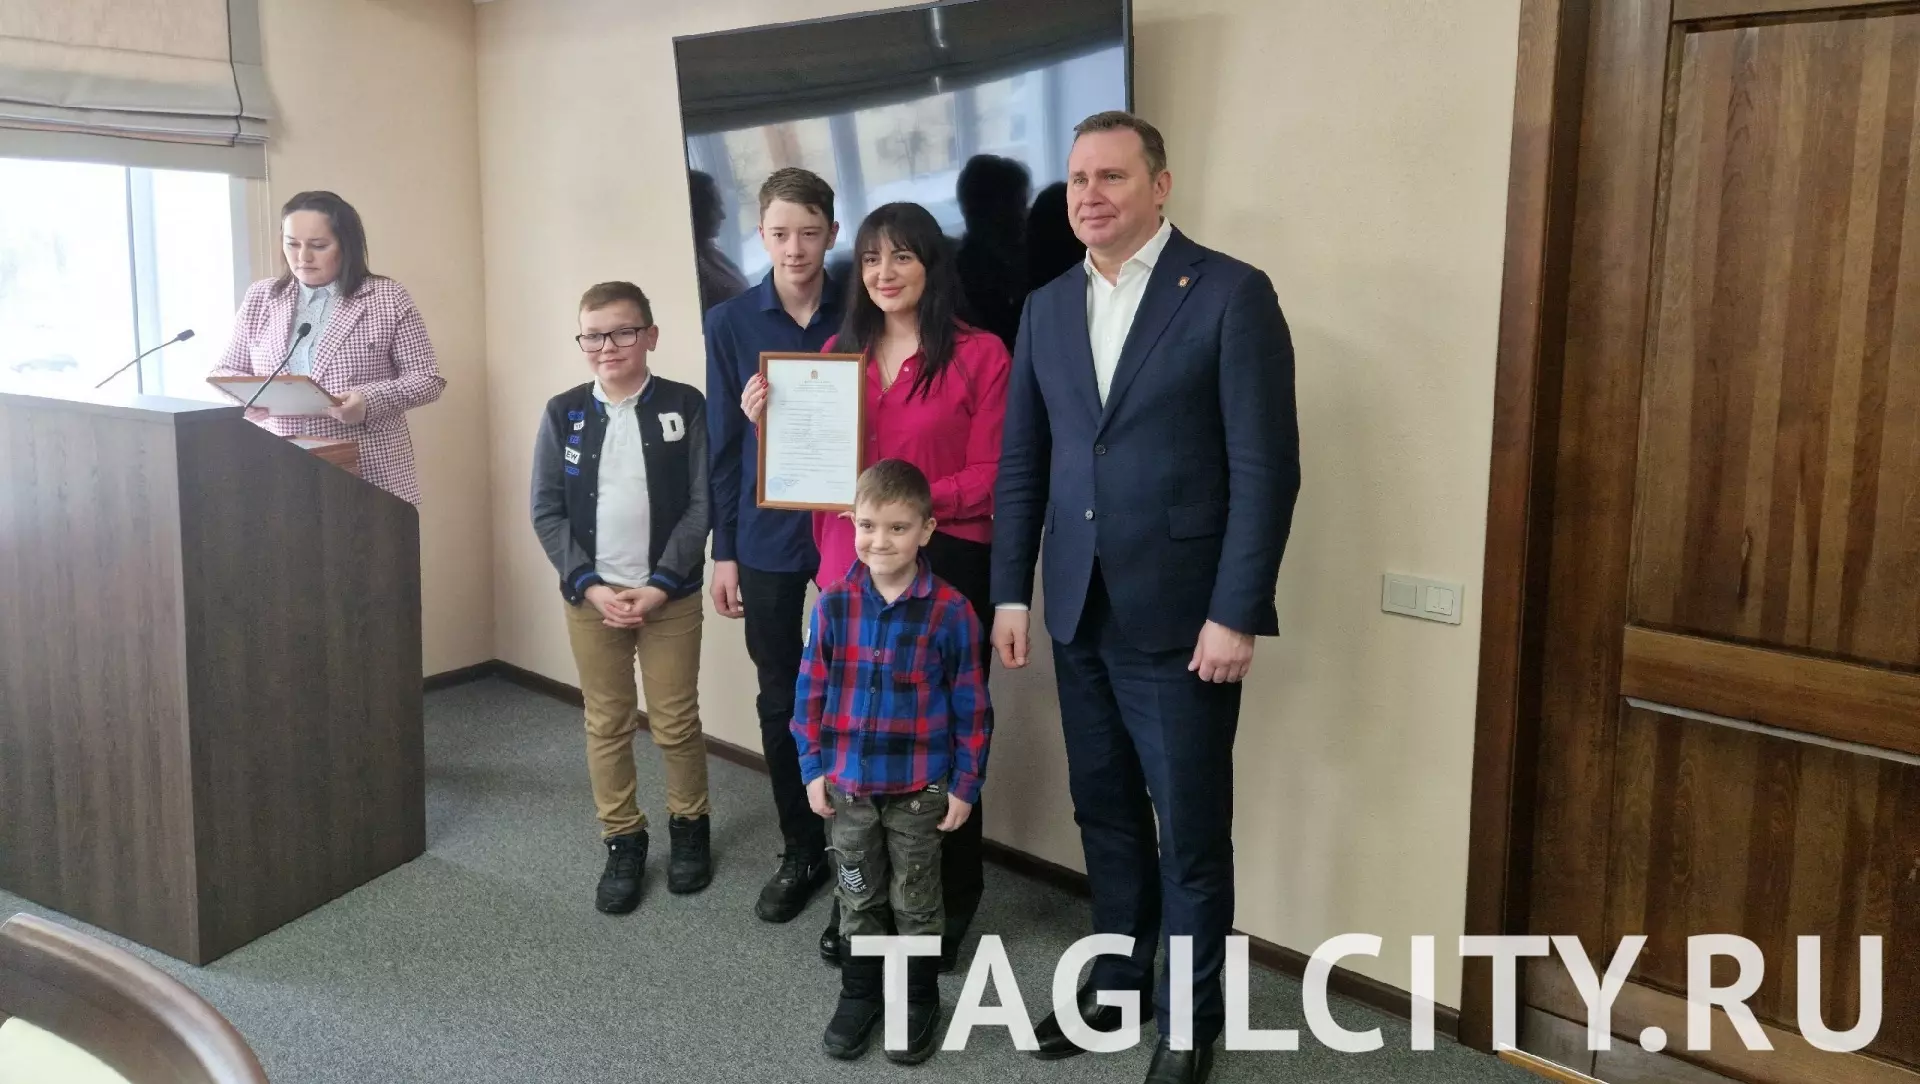 14 молодых семей из Нижнего Тагила получили сертификаты на покупку жилья